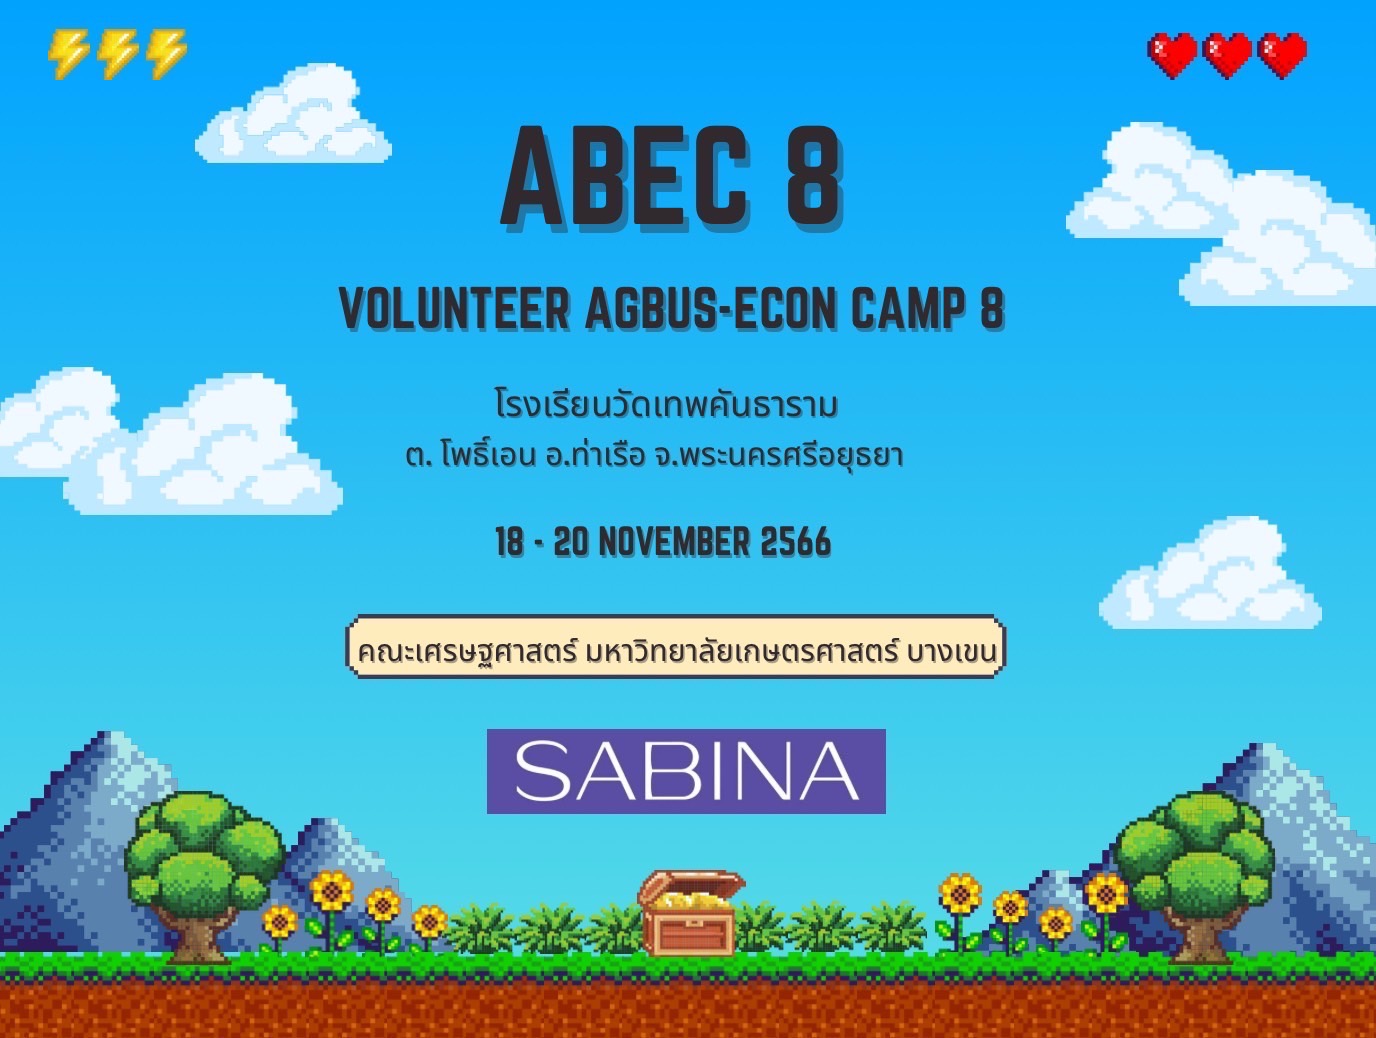 บริษัท ซาบีน่า ฟาร์อีสท์ จำกัด สนับสนุนโครงการ “ค่าย ABEC (Agbus-econ Camp) ครั้งที่ 8”